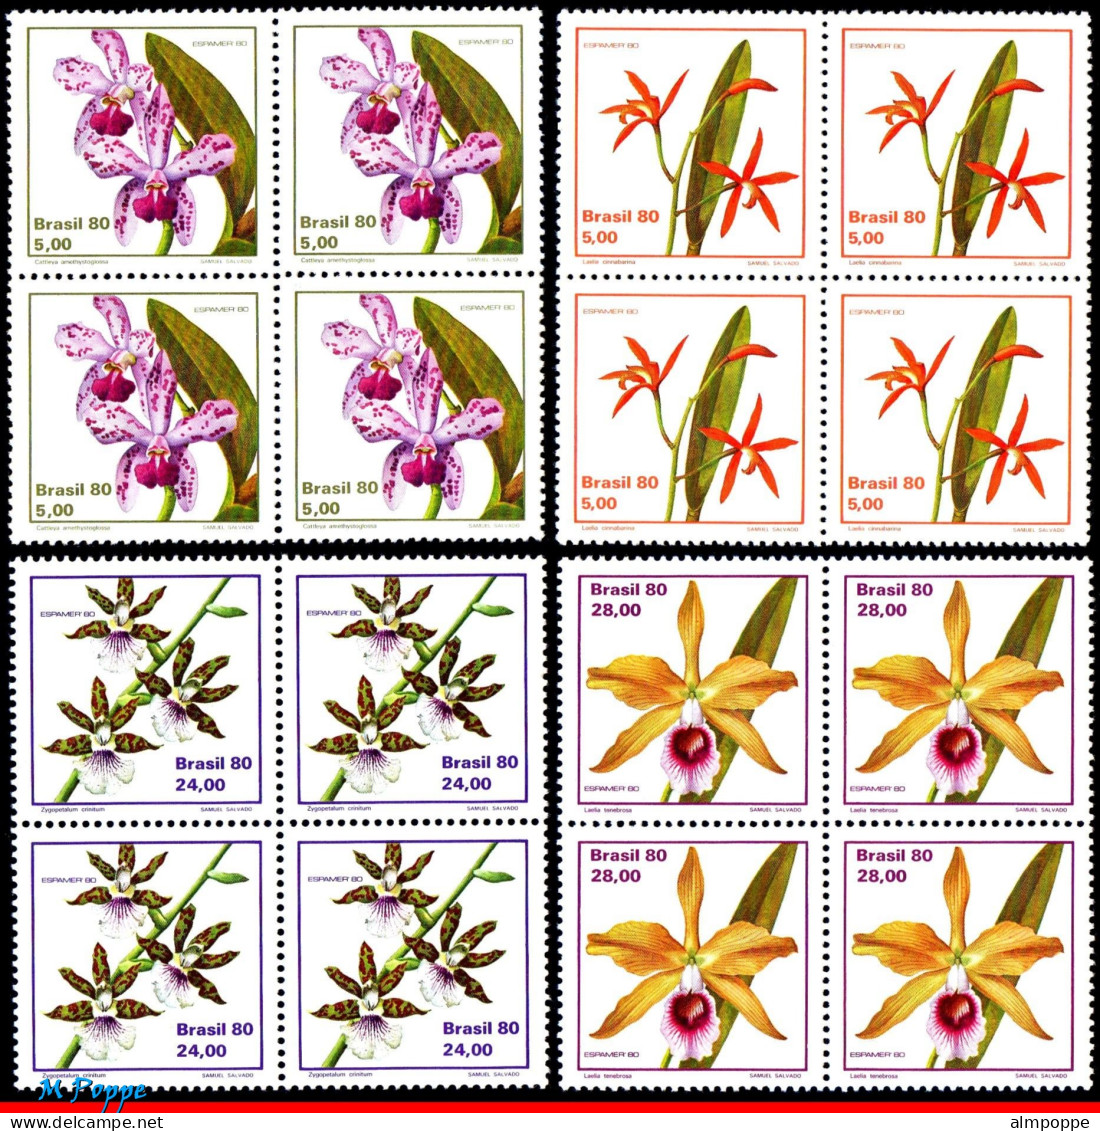 Ref. BR-1711-14Q BRAZIL 1980 - ORCHIDS,PHILATELICEXHIBITION,MI# 1785-88,BLOCKS MNH, FLOWERS, PLANTS 16V Sc# 1711-1714 - Hojas Bloque